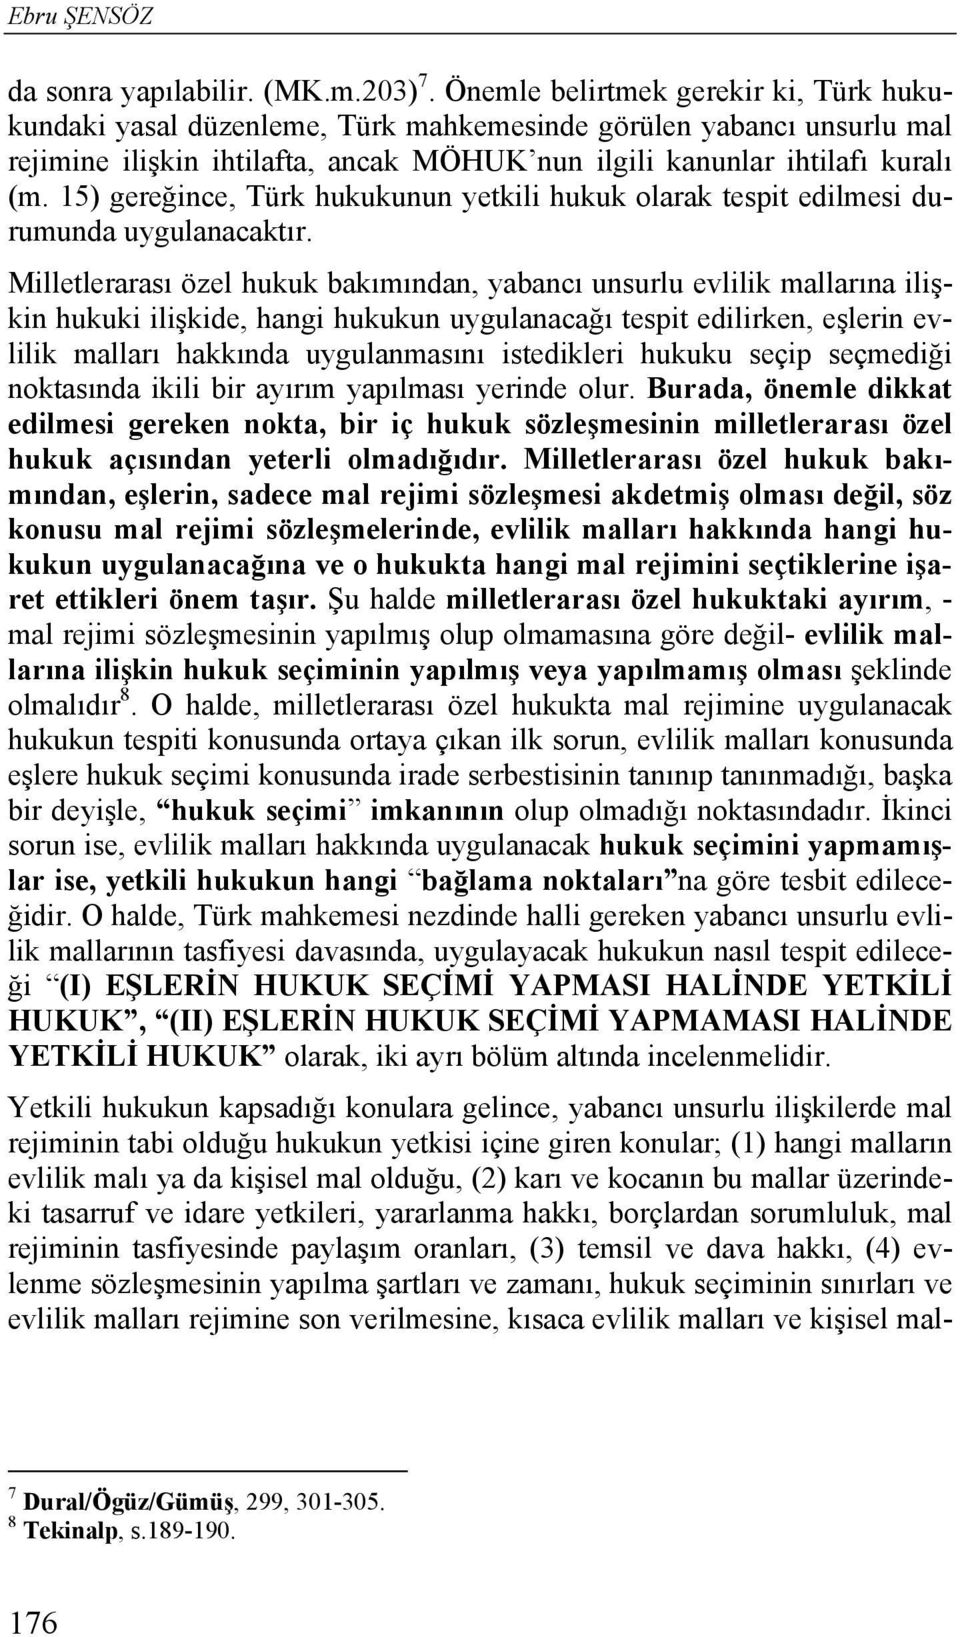 15) gereğince, Türk hukukunun yetkili hukuk olarak tespit edilmesi durumunda uygulanacaktır.